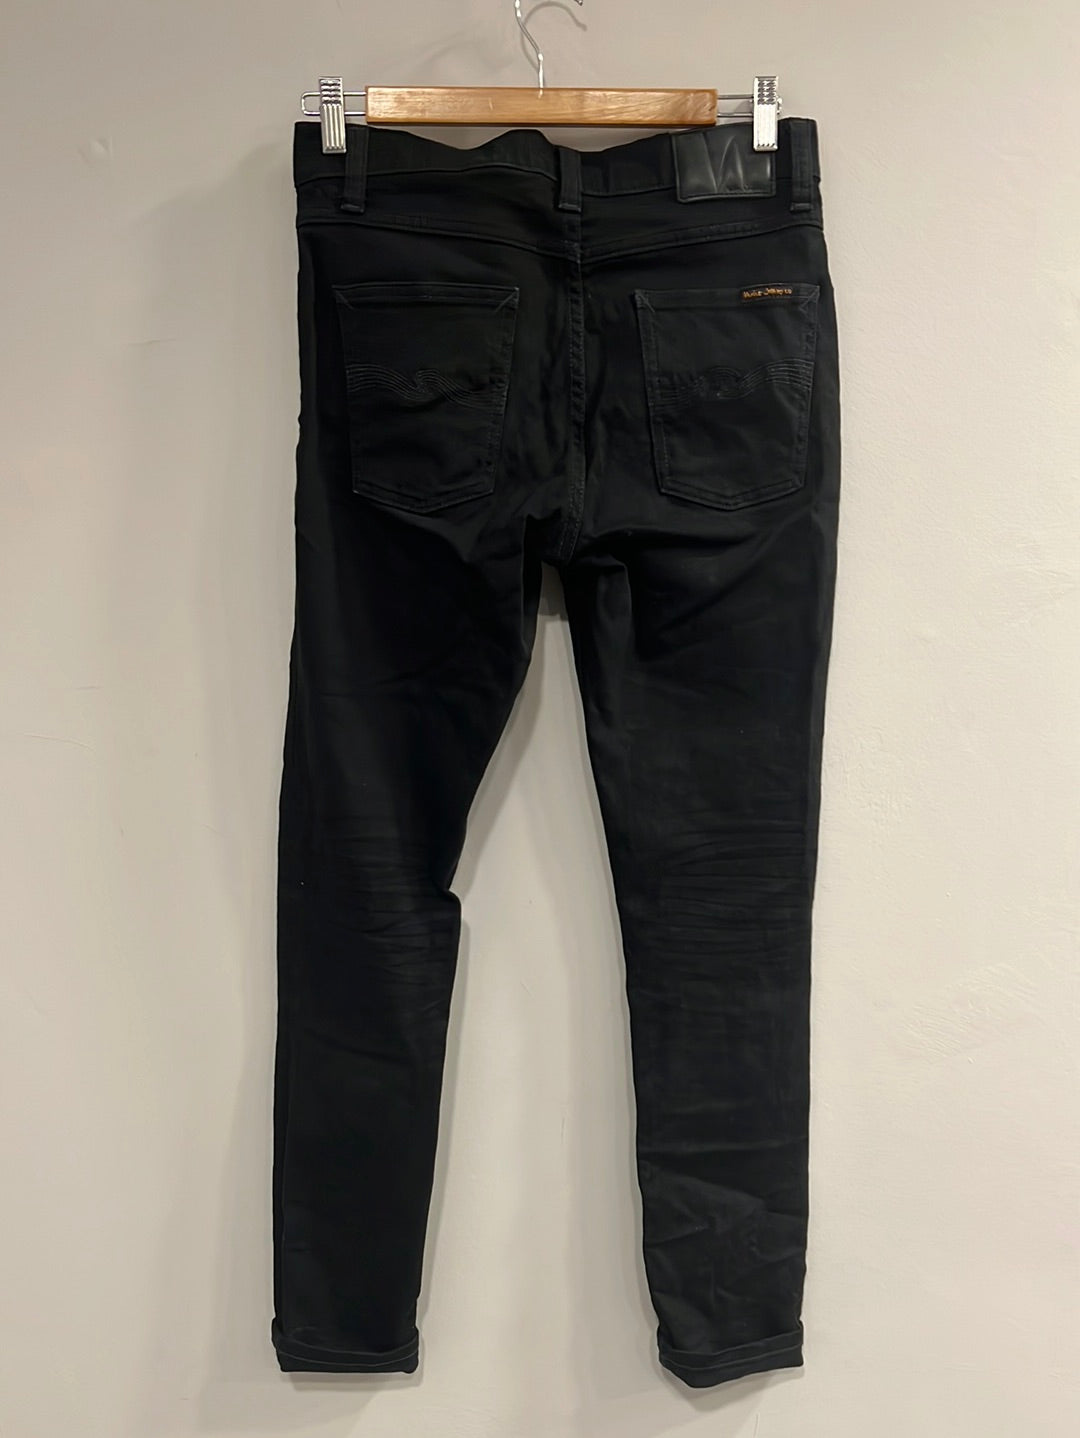 Nudie - Slim leg jeans with leather tab